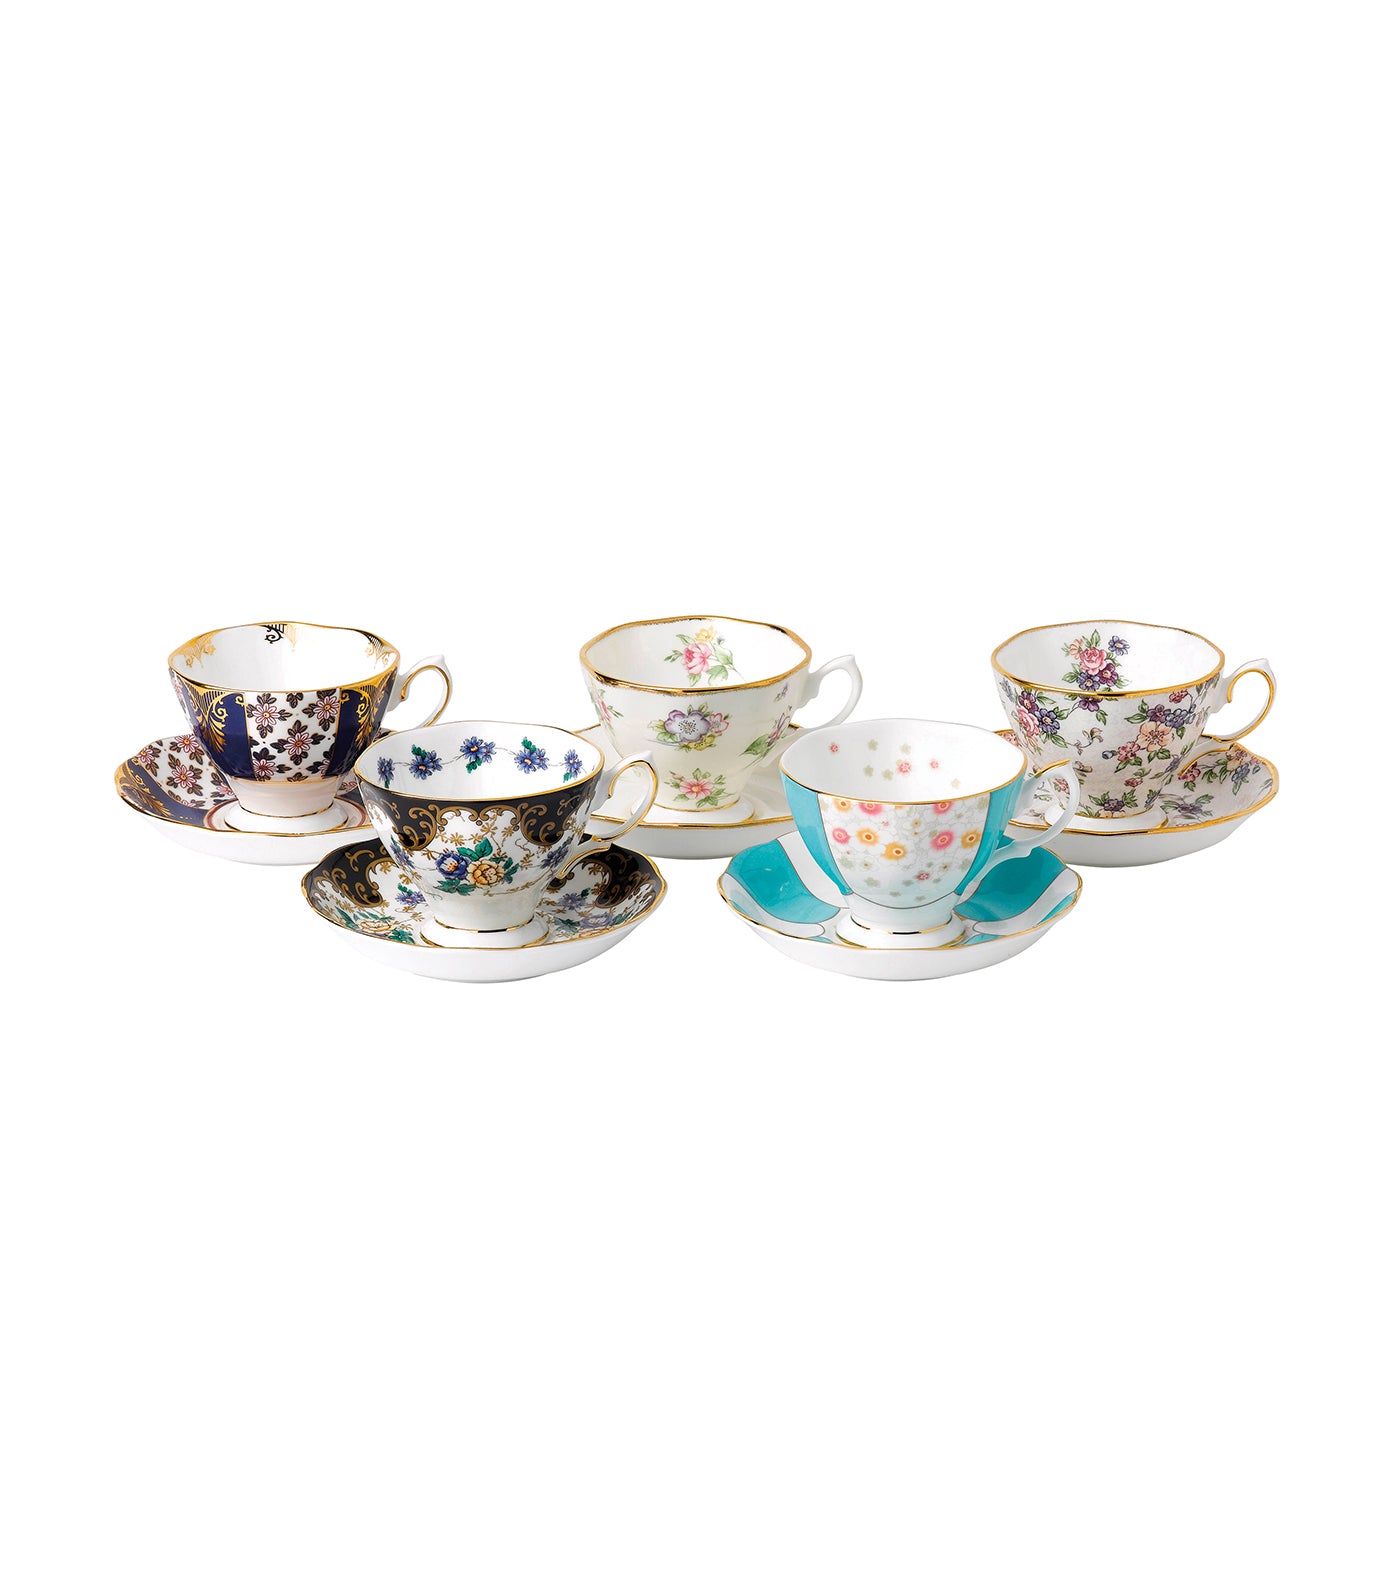 royal albert 100 years of royal albert 5-piece teacup & saucer set (1900-1940)